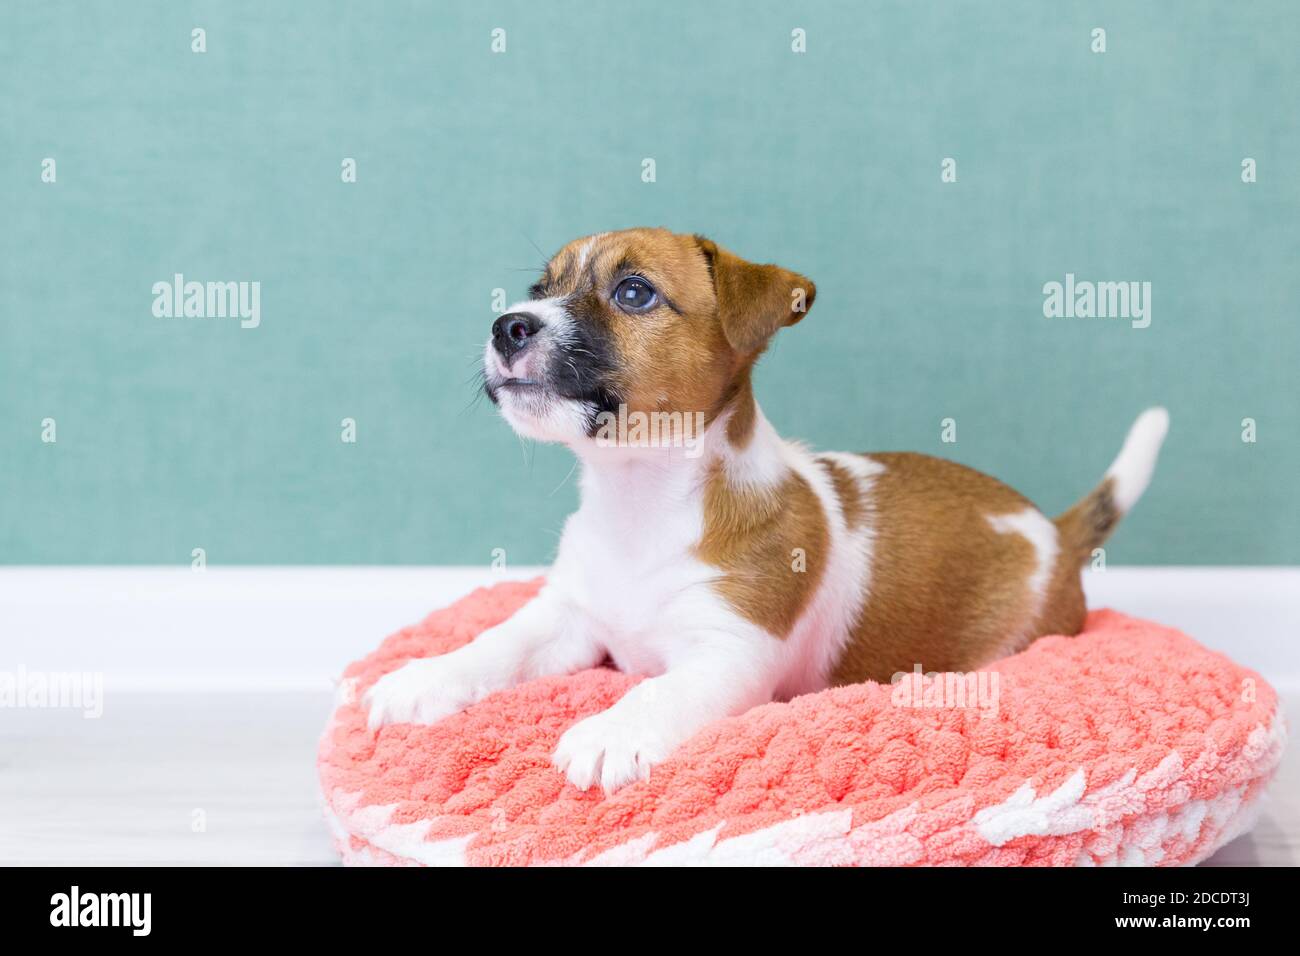 Un adorable chiot Jack Russell Terrier repose sur un donut en peluche  tricoté rose sur un fond vert. Concept de soins pour animaux, amour pour  les animaux. Chiens de race, breedin Photo